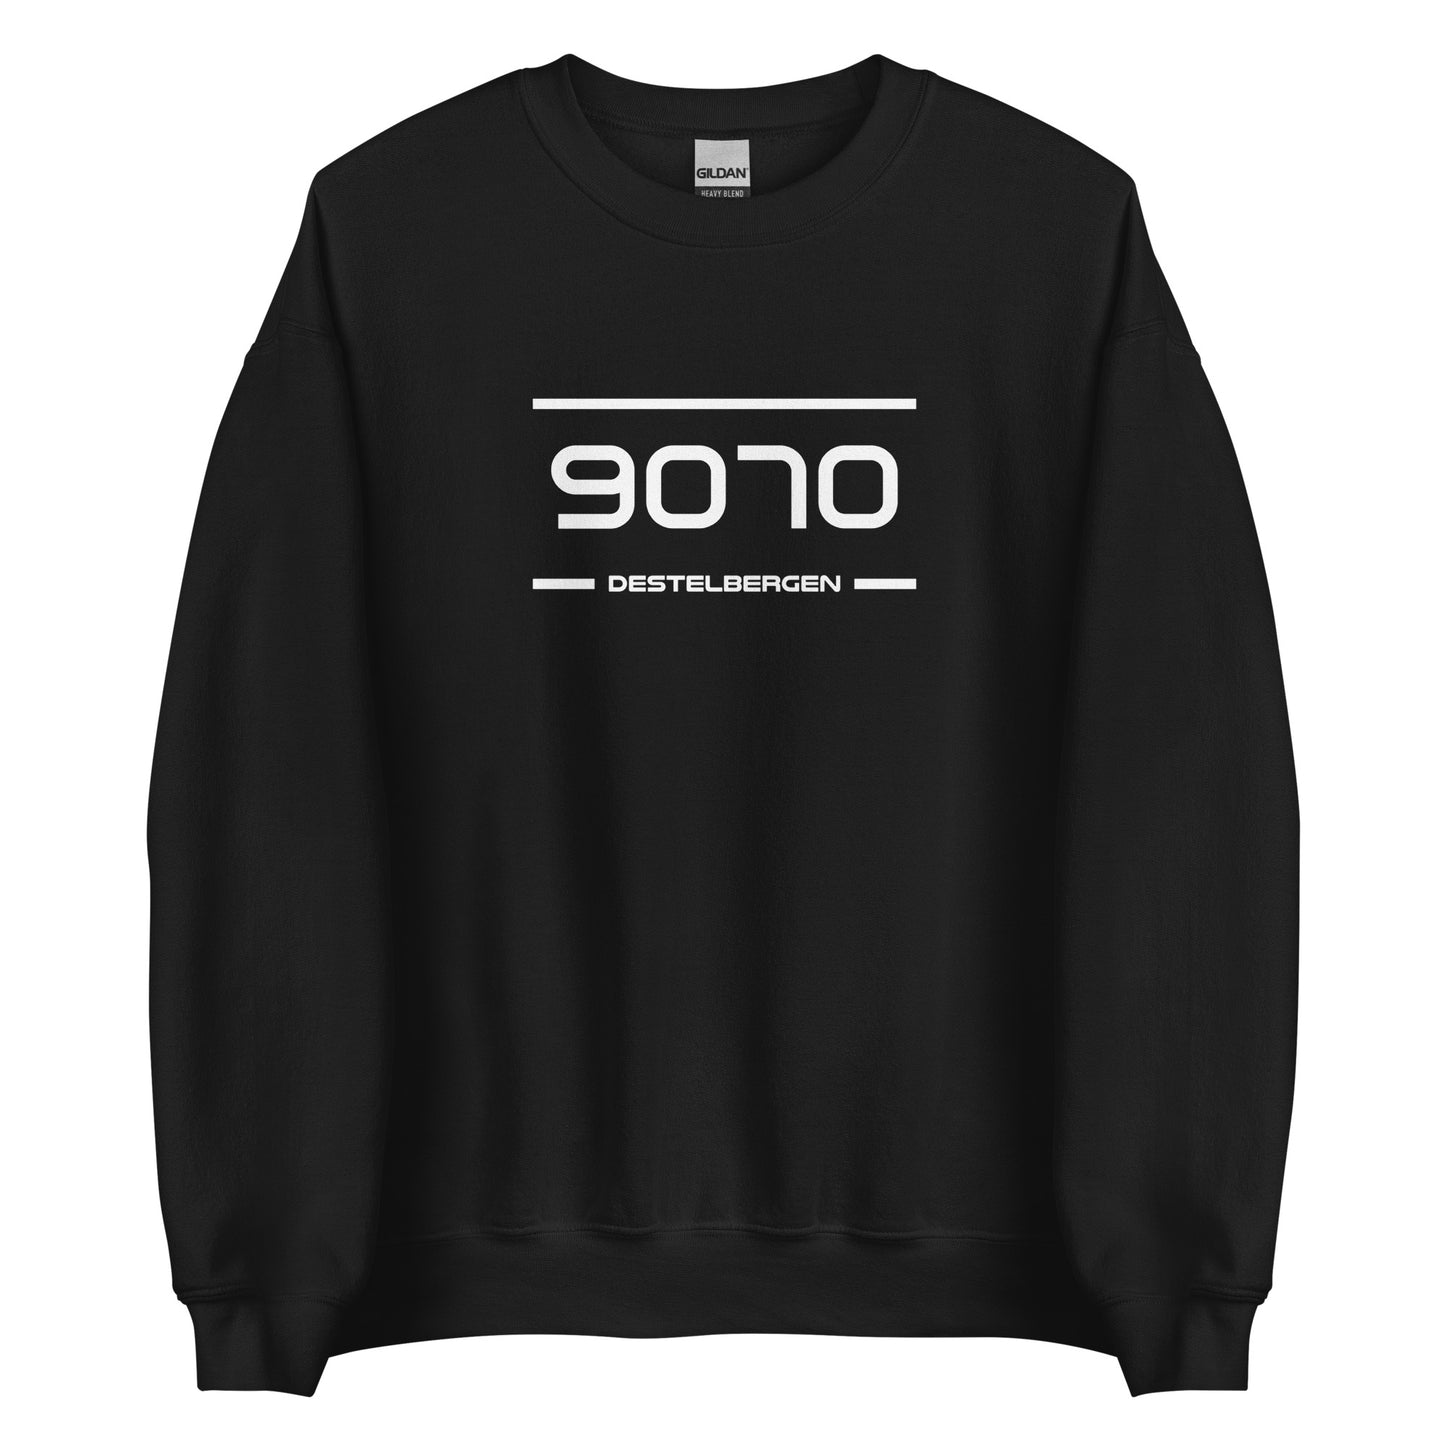 Sweater - 9070 - Destelbergen (M/V)